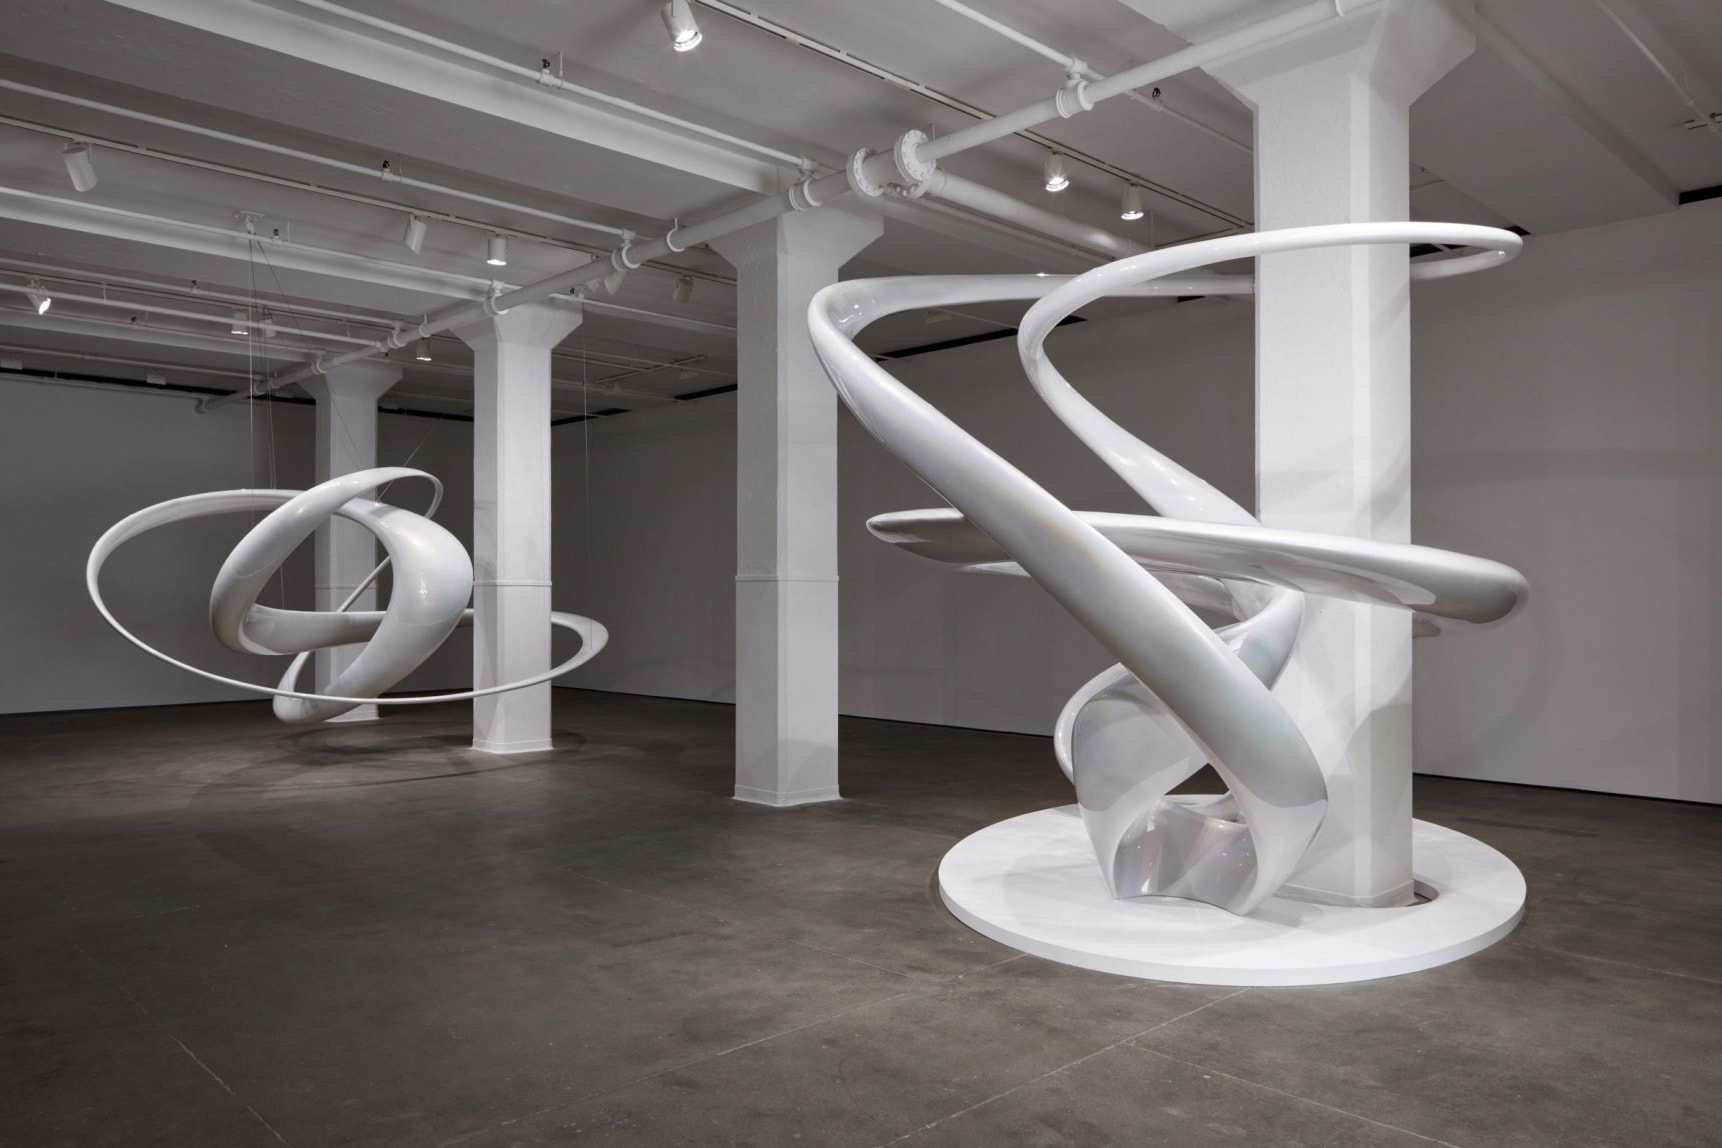 Mariko Mori Sean Kelly Gallery New York Invisible Dimension sculpture March 22 april 28 2018 exhibition seven